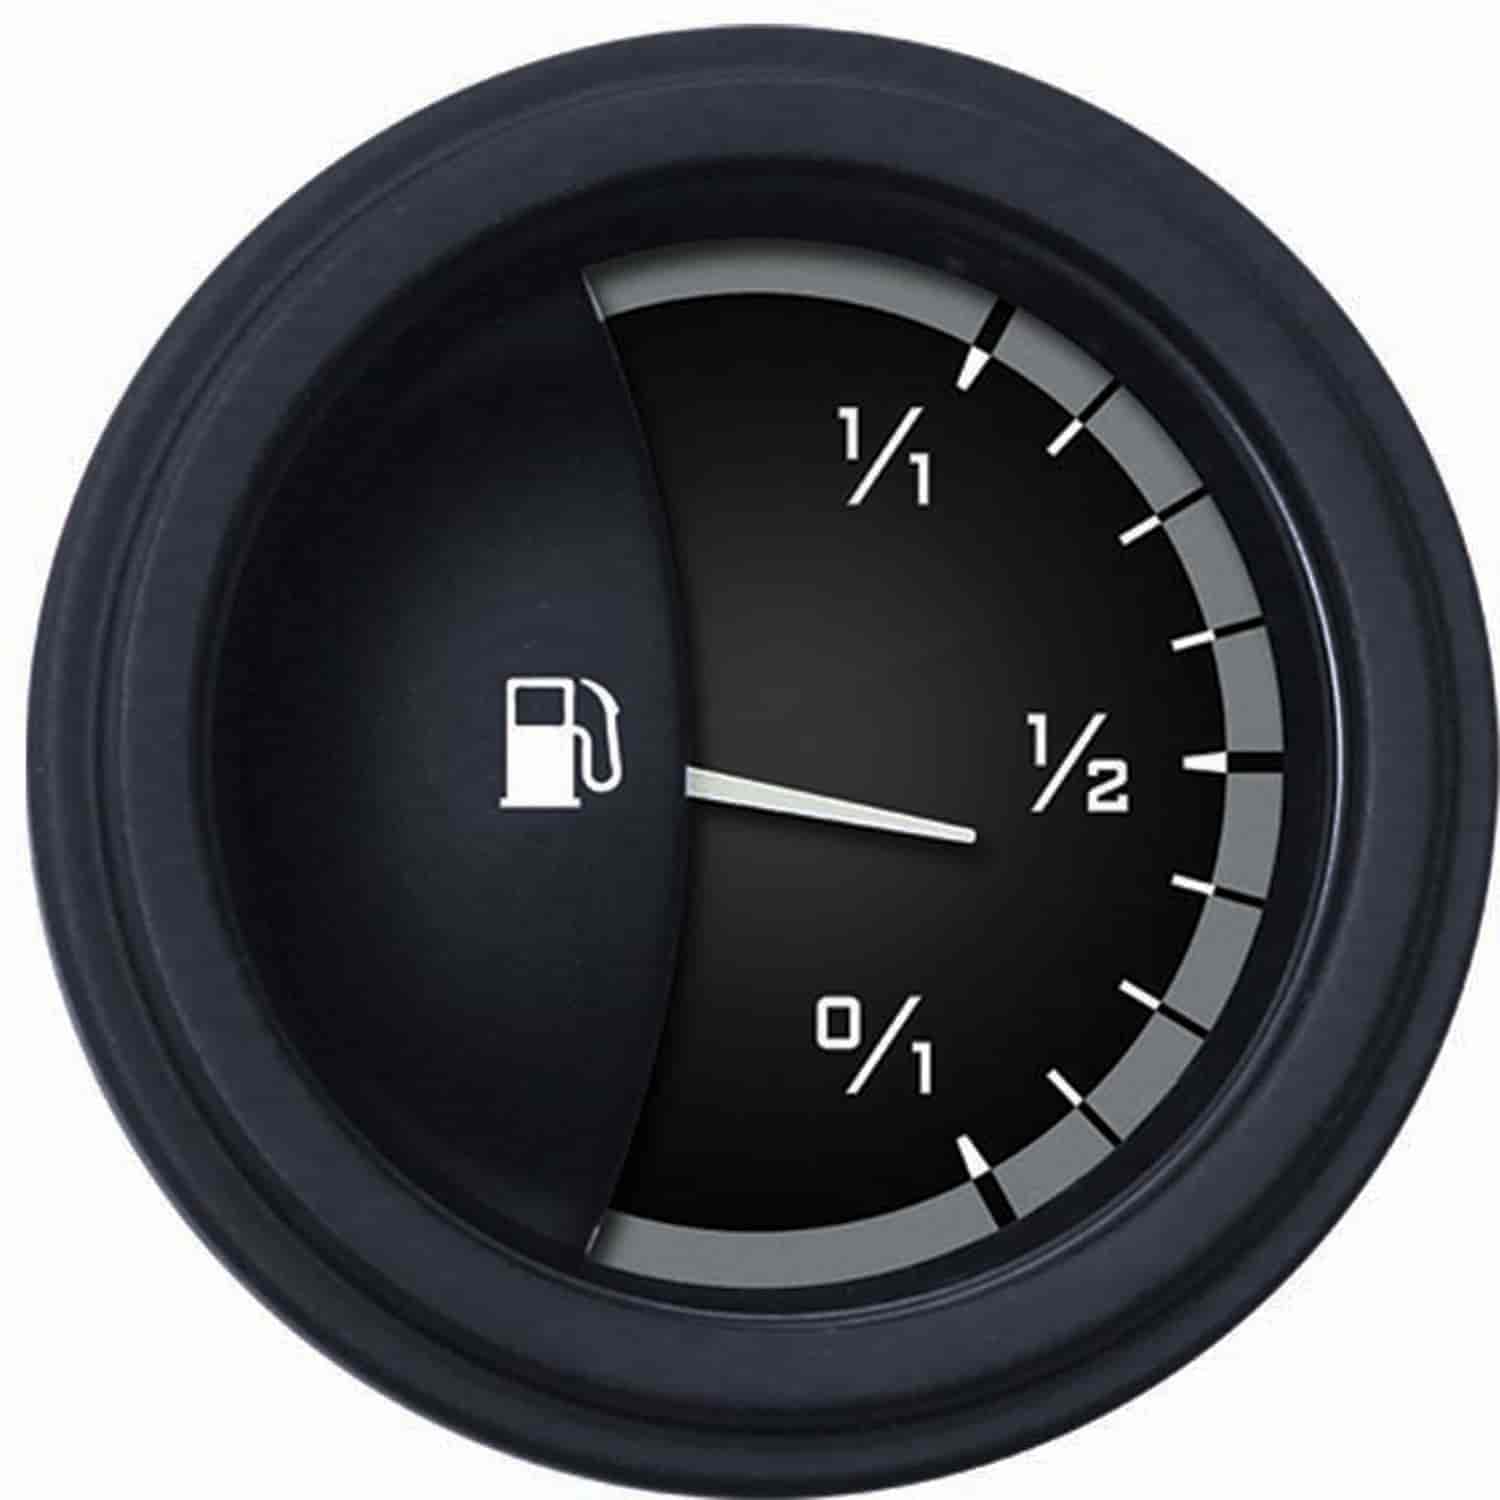 Gray AutoCross Series Fuel Gauge 2-1/8